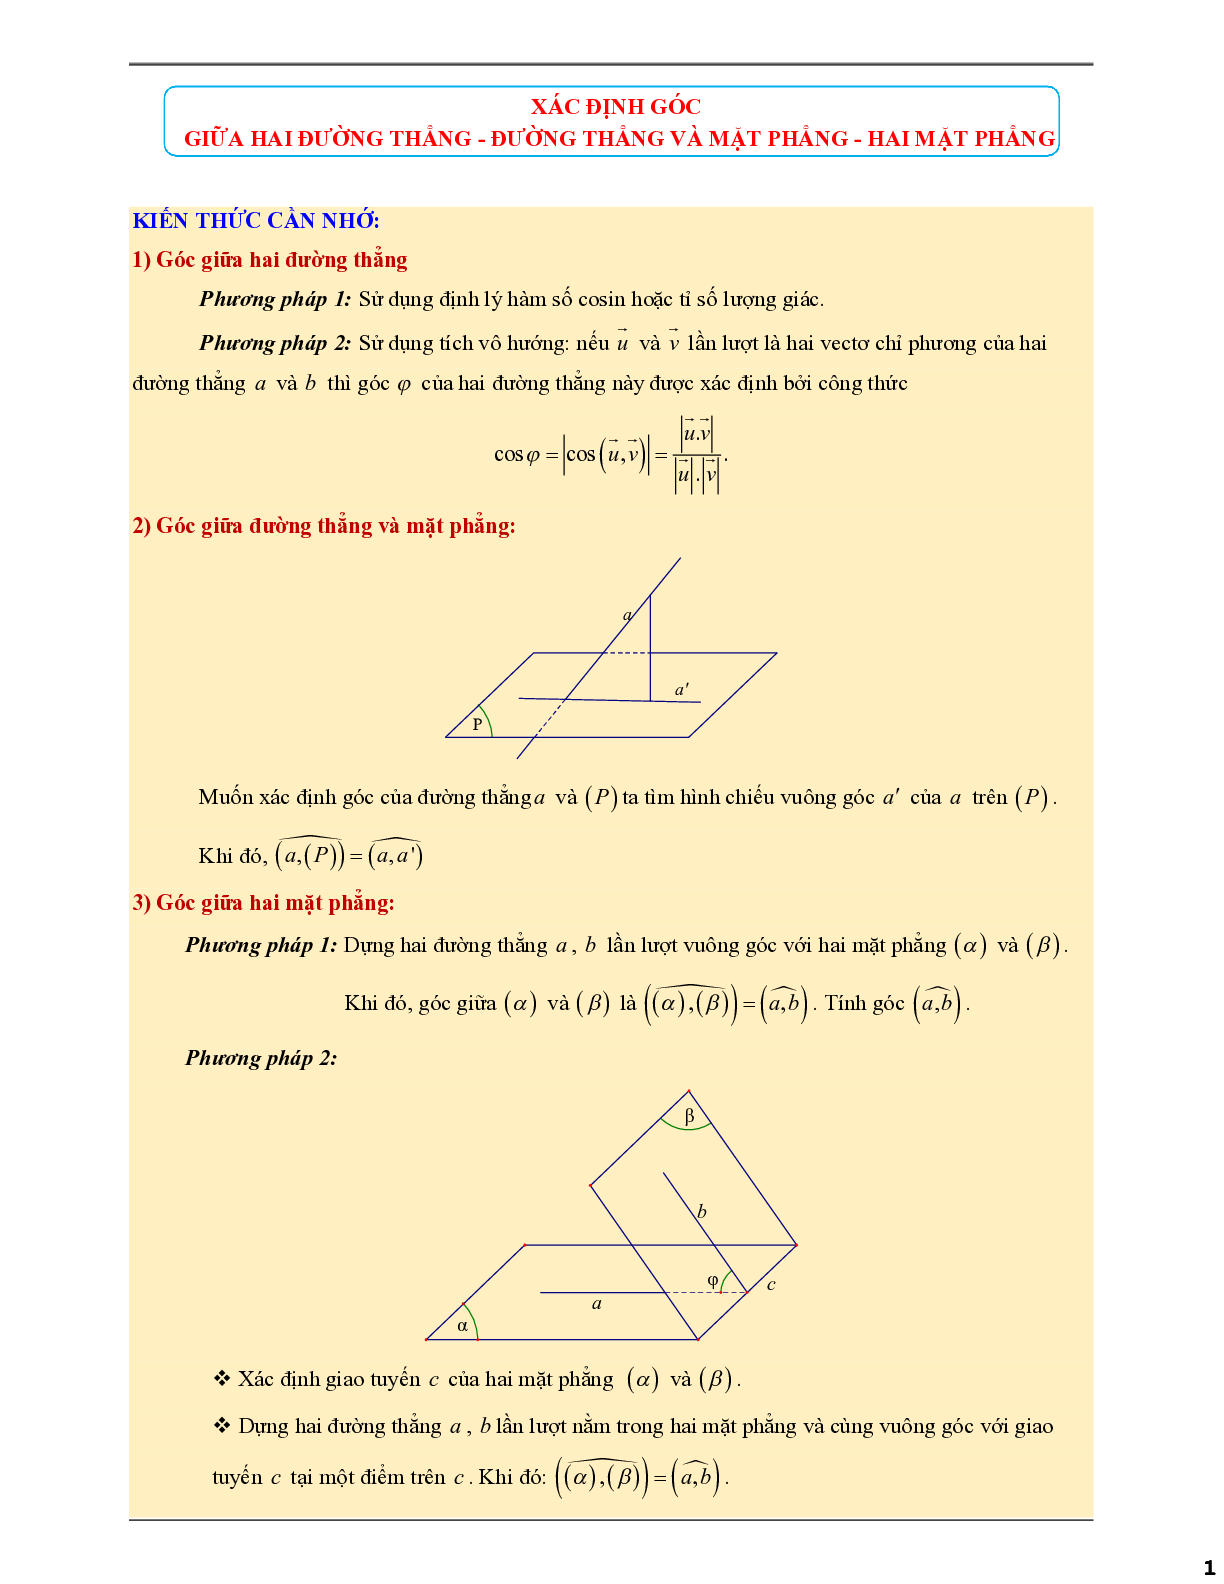 Xác định góc giữa hai đưởng thẳng và mặt phẳng - giữa hai mặt phẳng (trang 1)